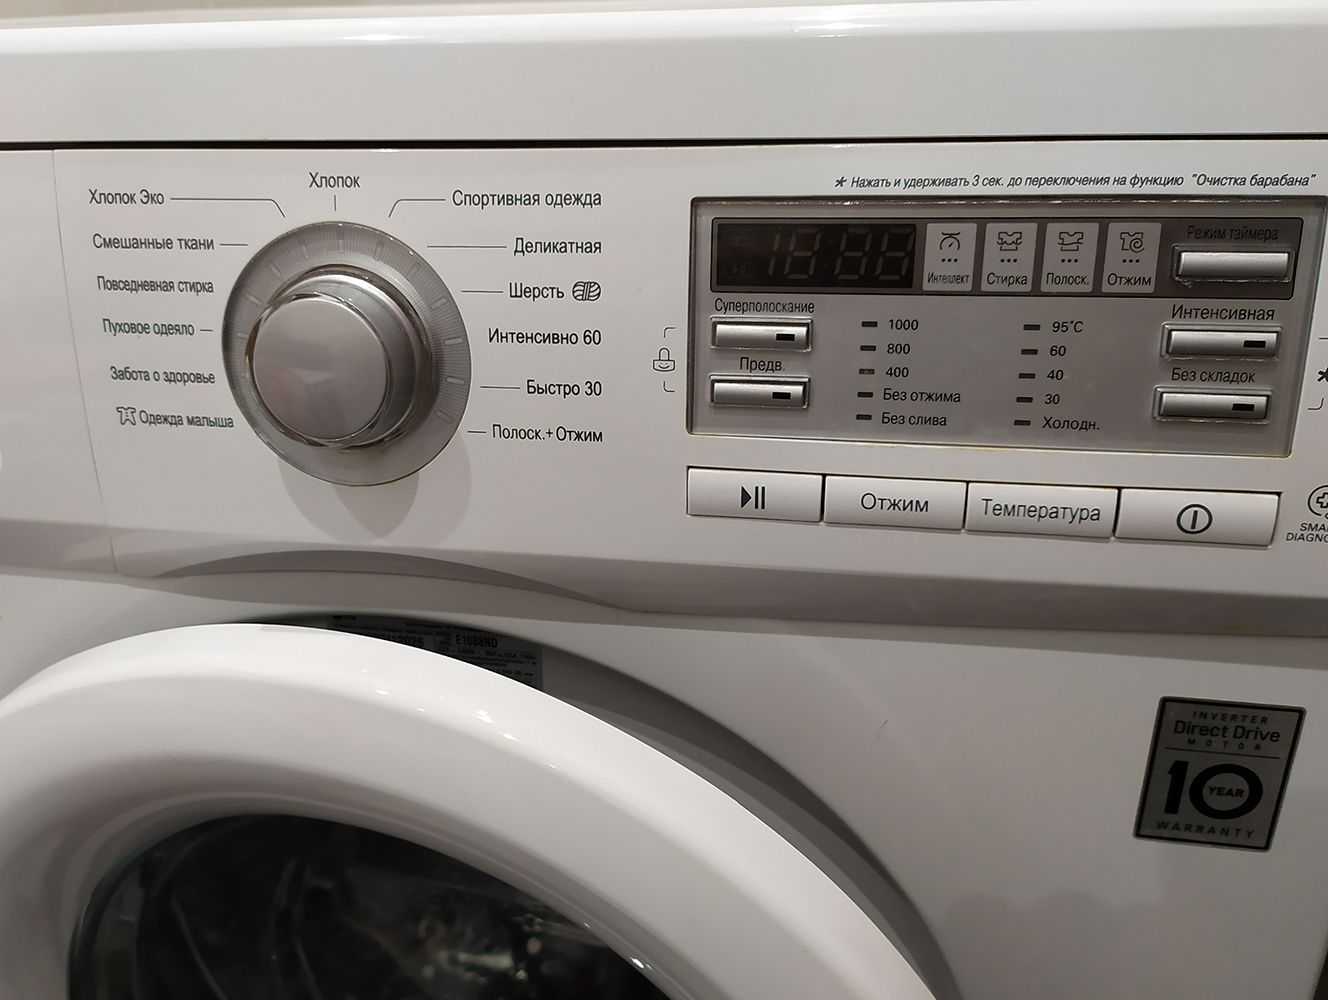 Как расшифровать маркировку стиральных машин фирмы lg